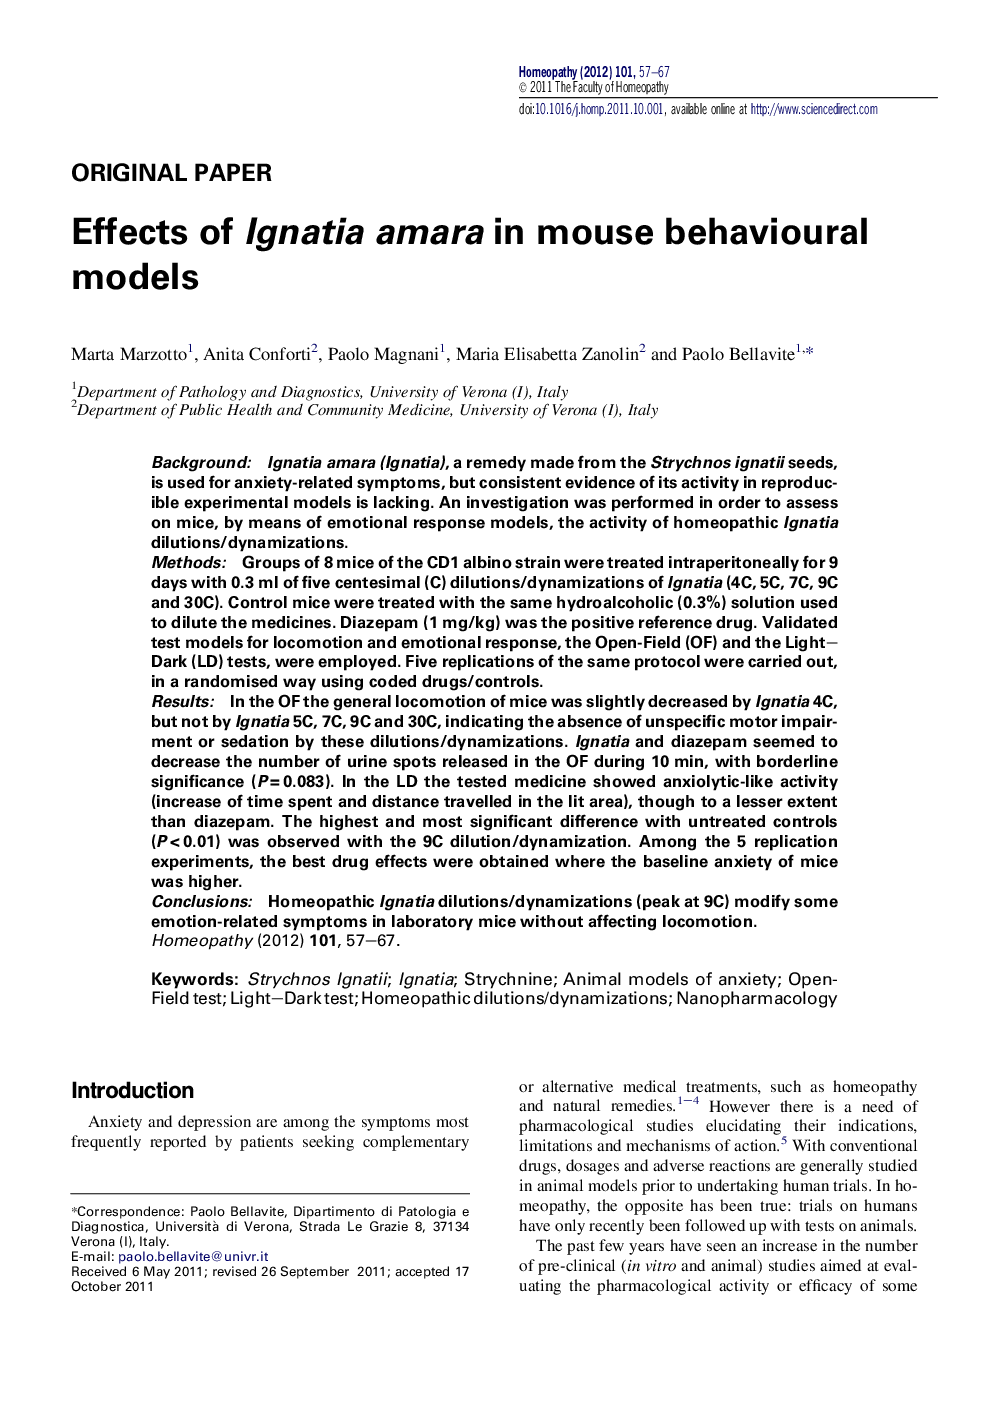 Effects of Ignatia amara in mouse behavioural models